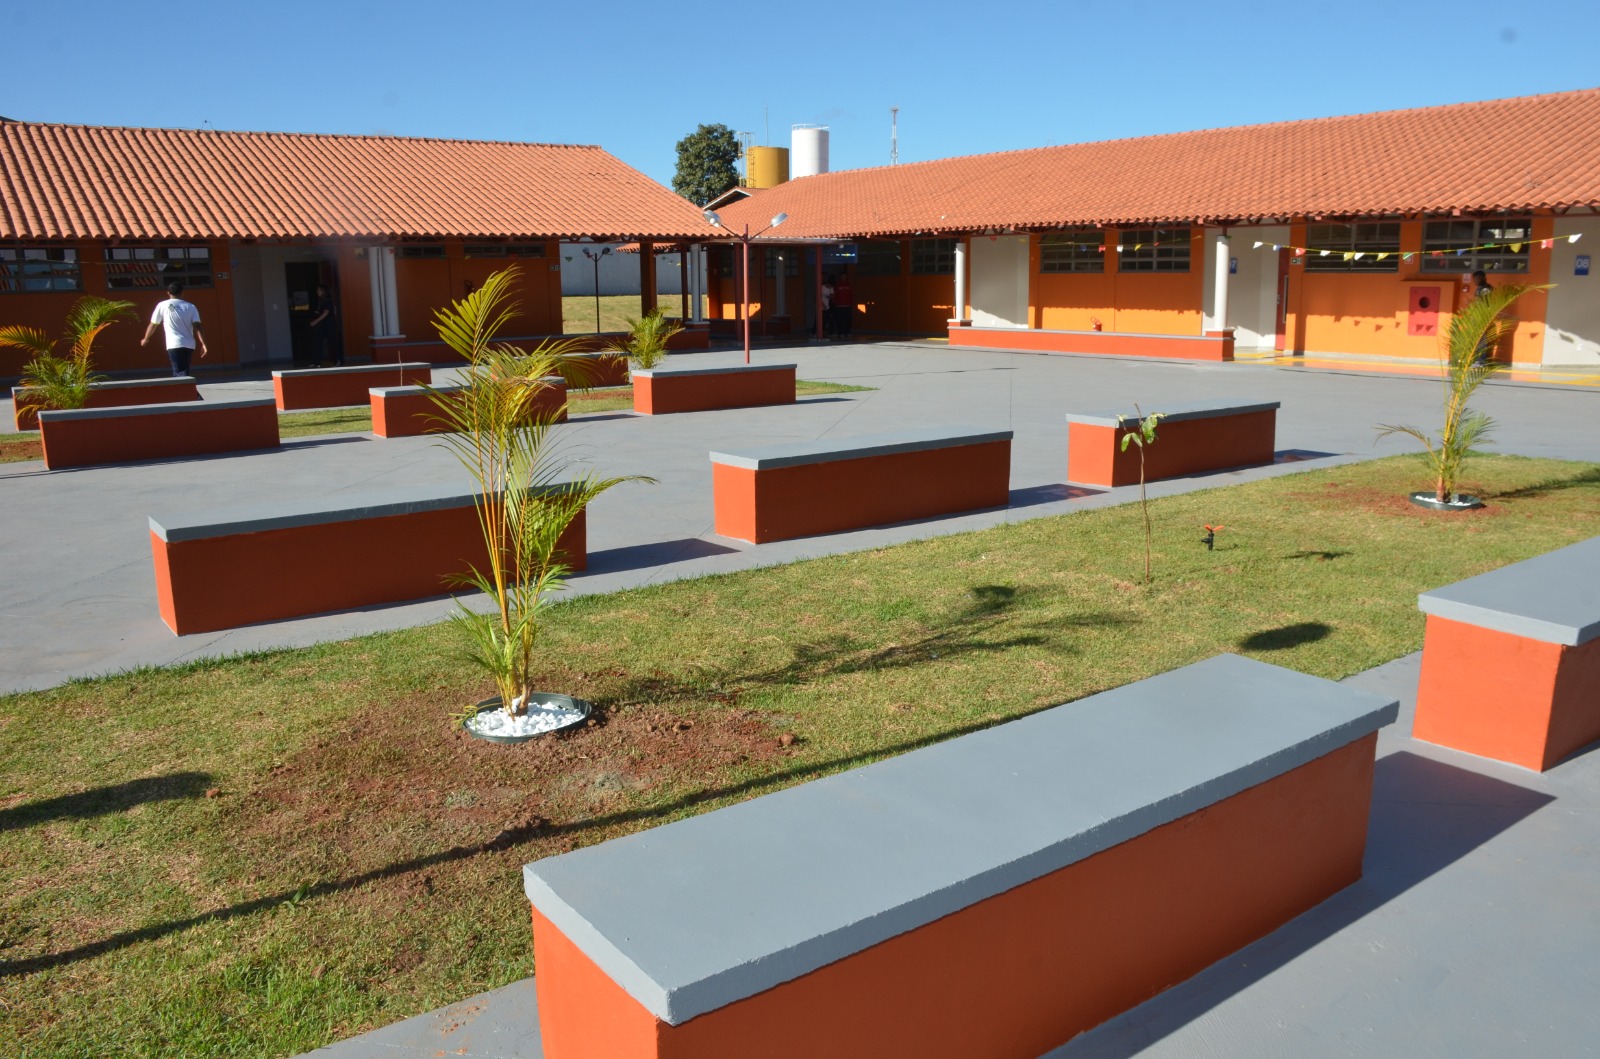 Estado investe mais de R$ 40 milhões em colégios no Entorno do DF